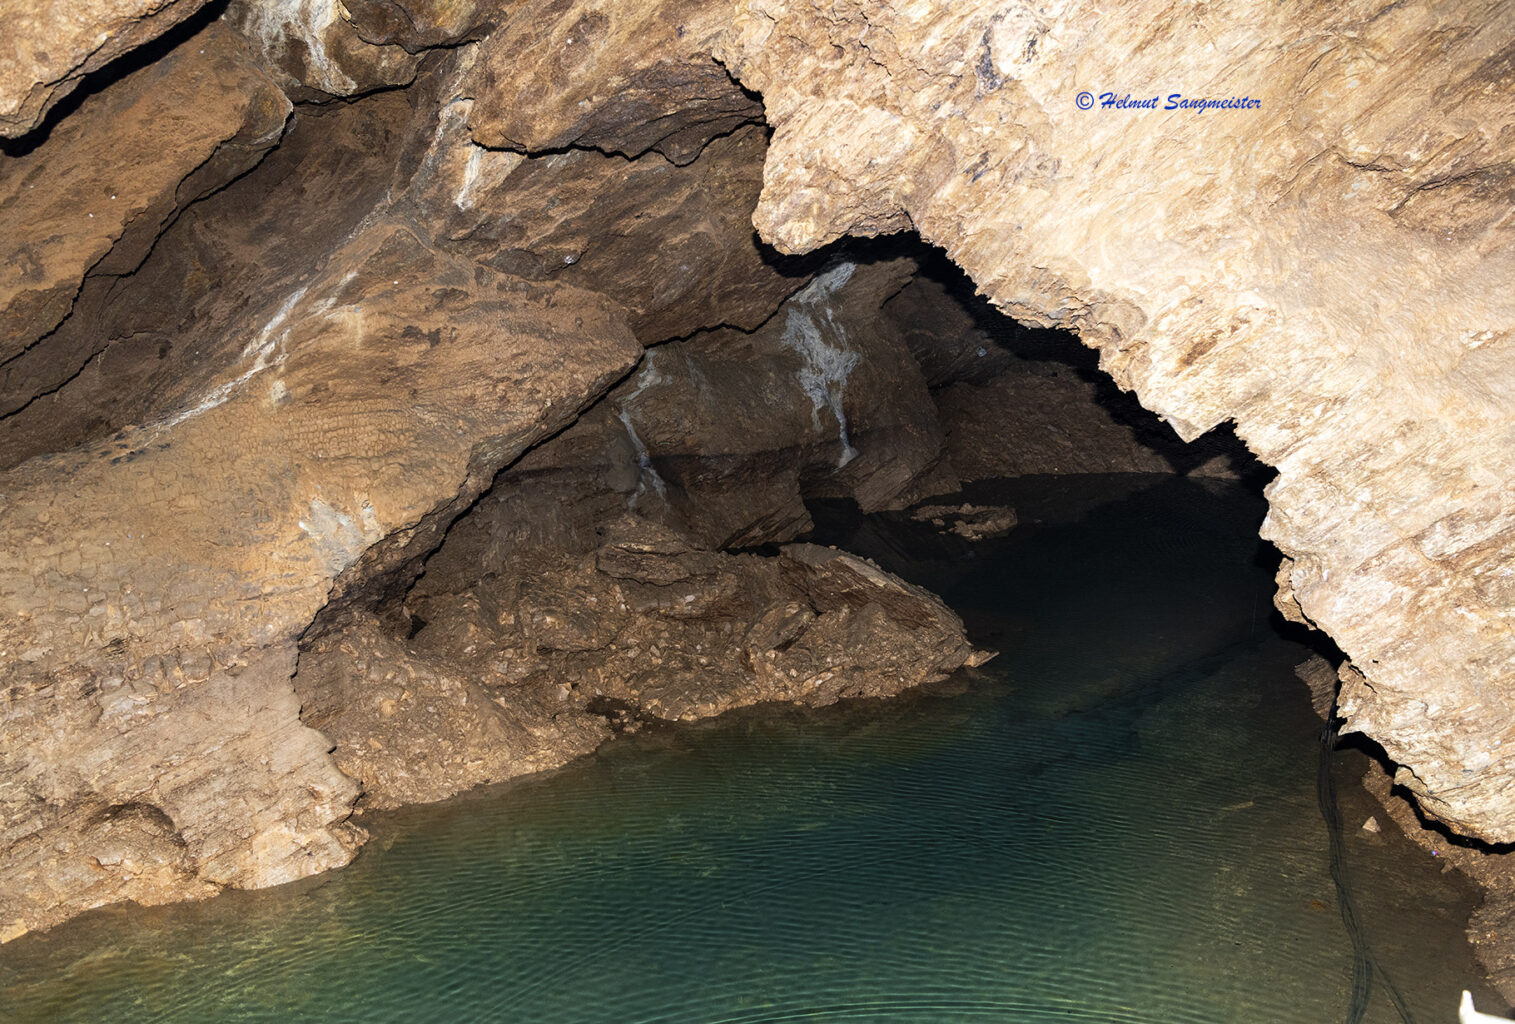 Zu sehen Ausschnitt eines unterirdischen Sees mit glasklarem Wasser umgeben und überspannt von einem Felsengewölbe.